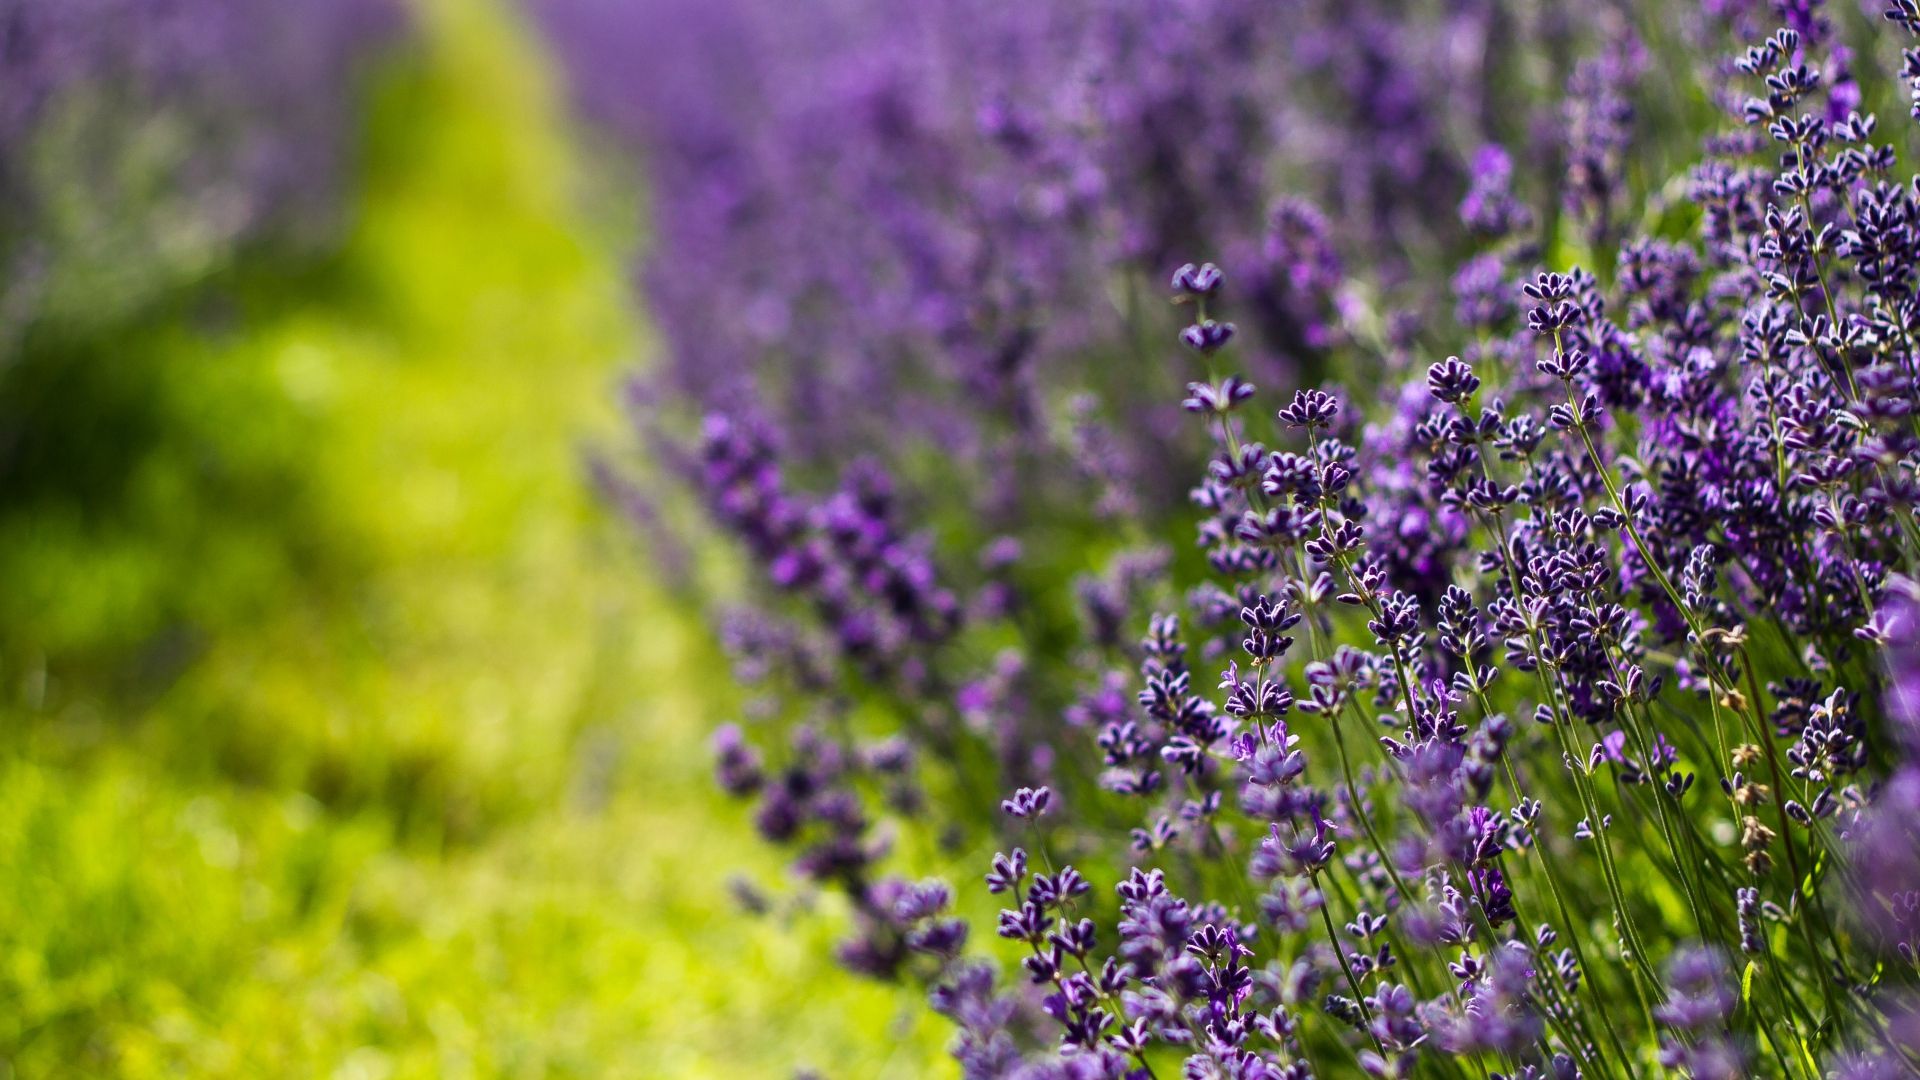 Pix. Lavender fields, cashadvance6online.com free